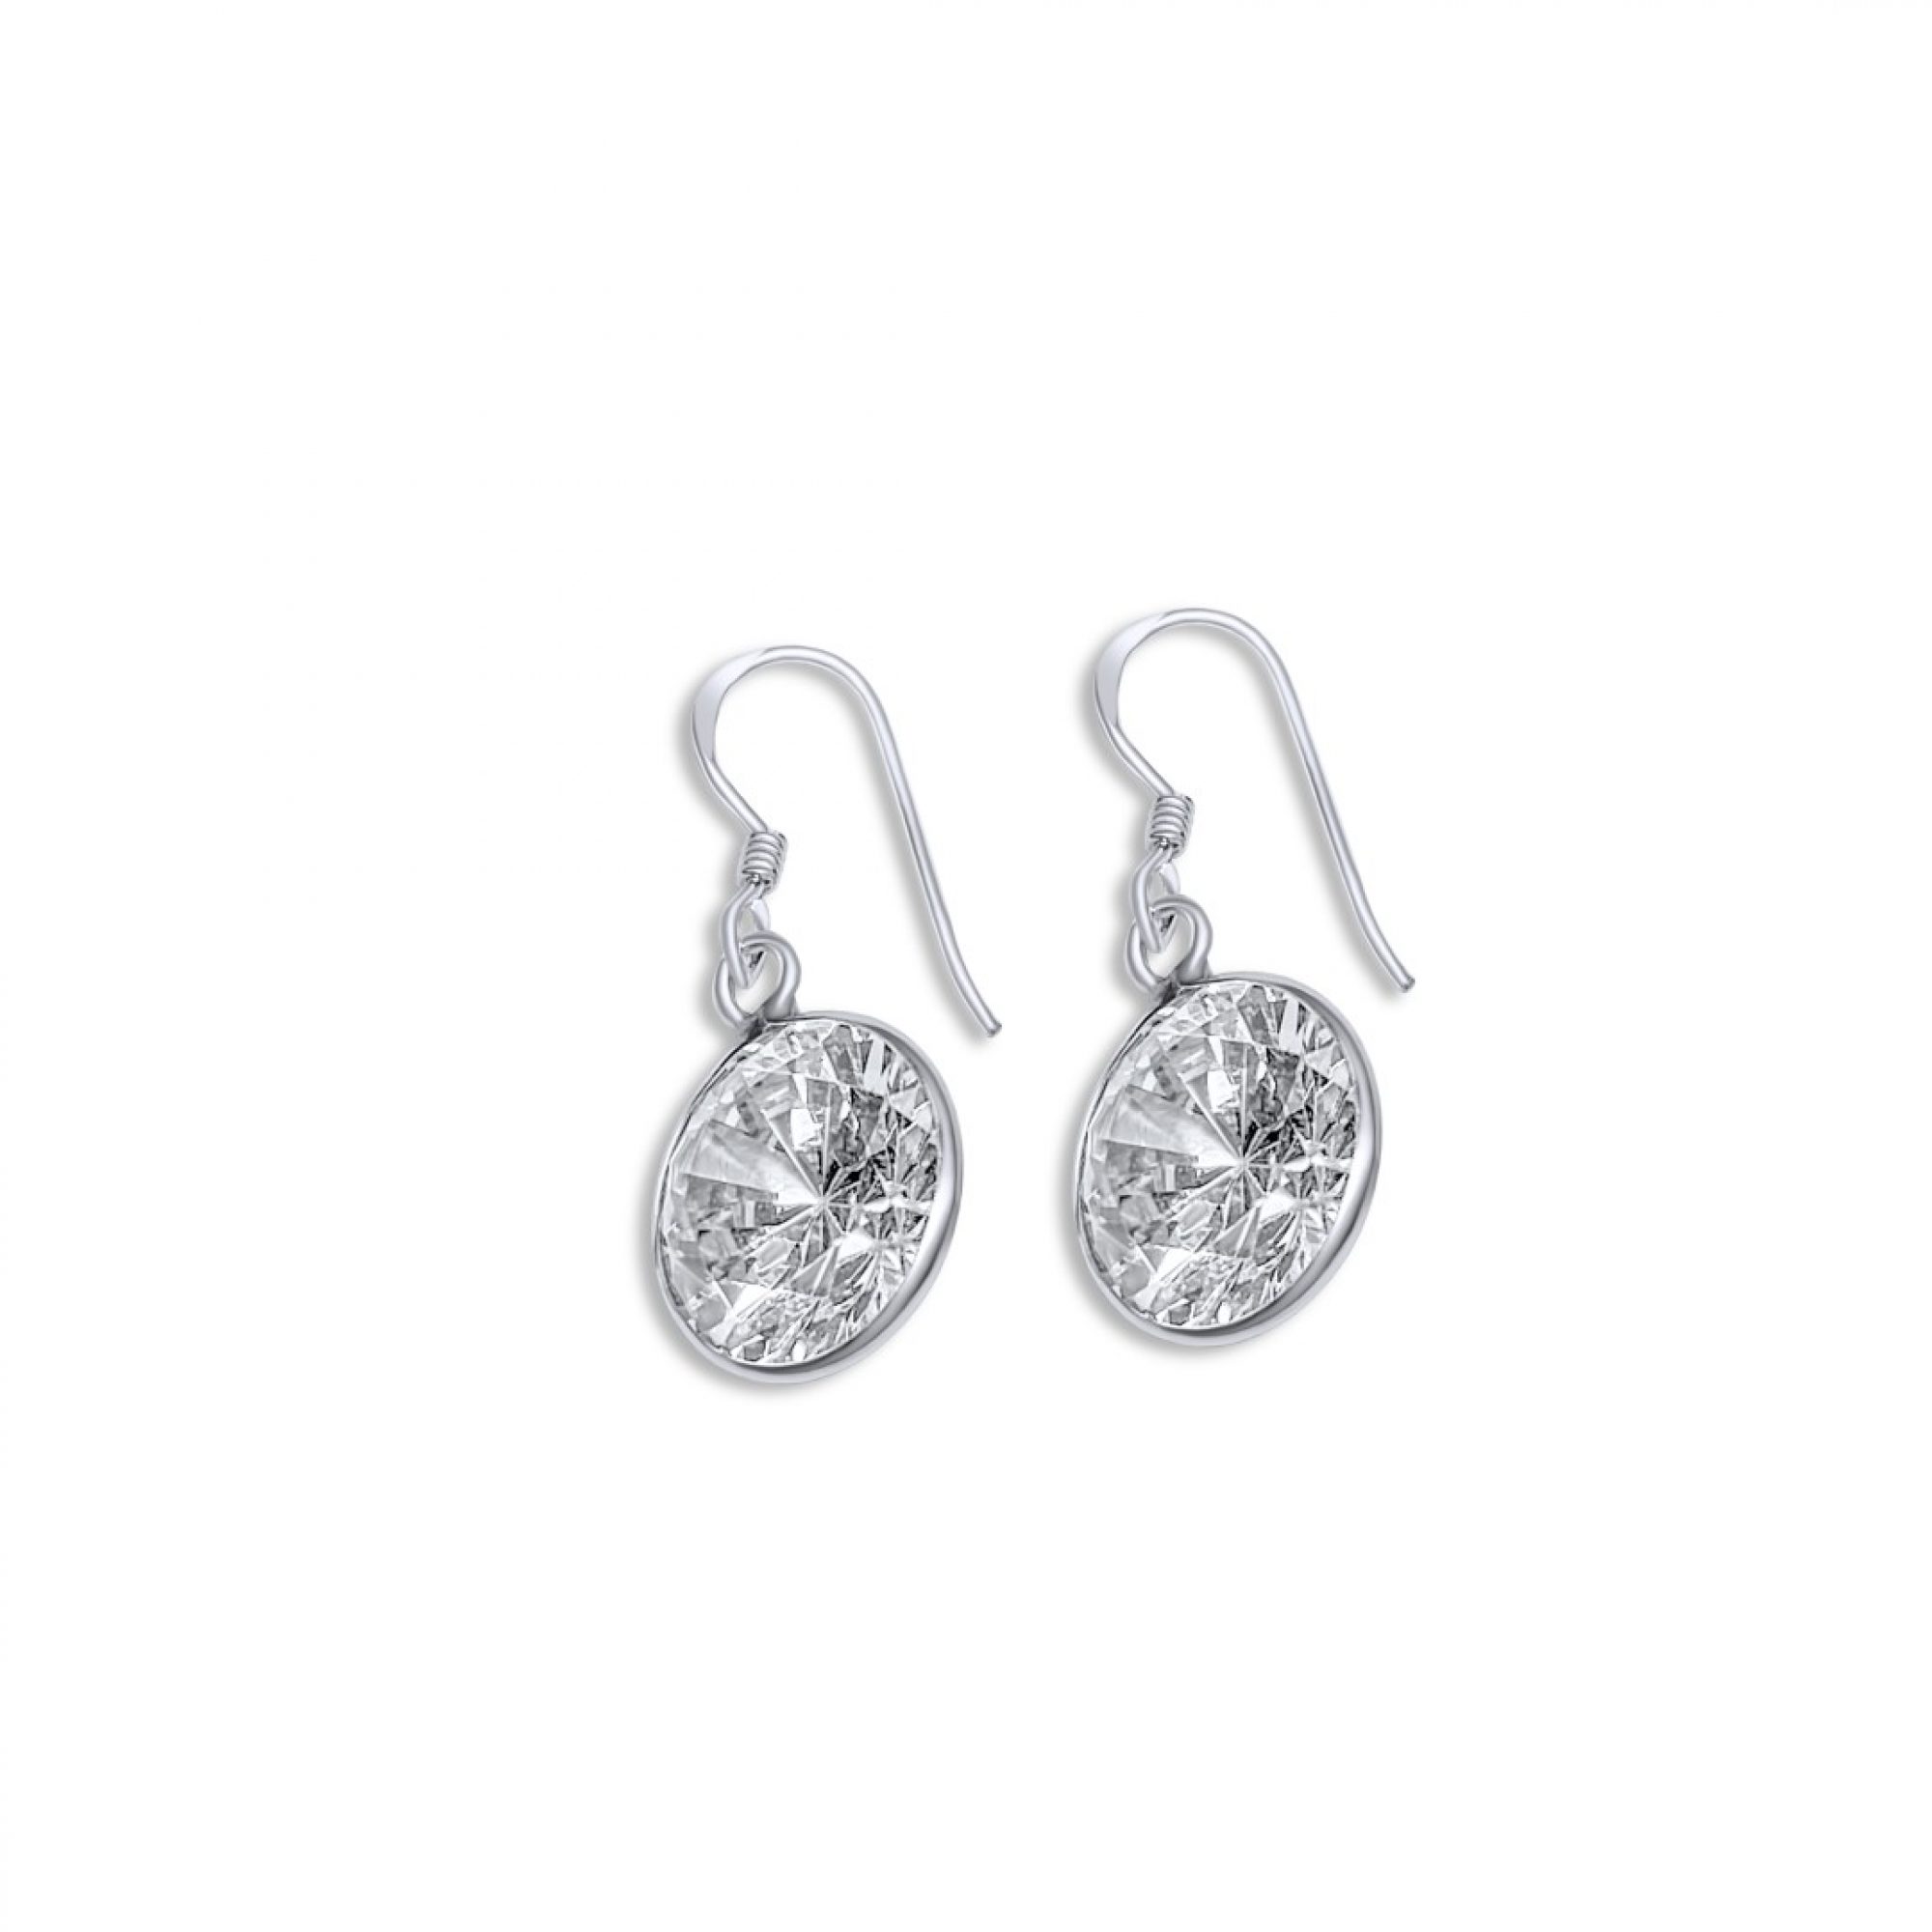 Silver dangle earrings with zircon stone